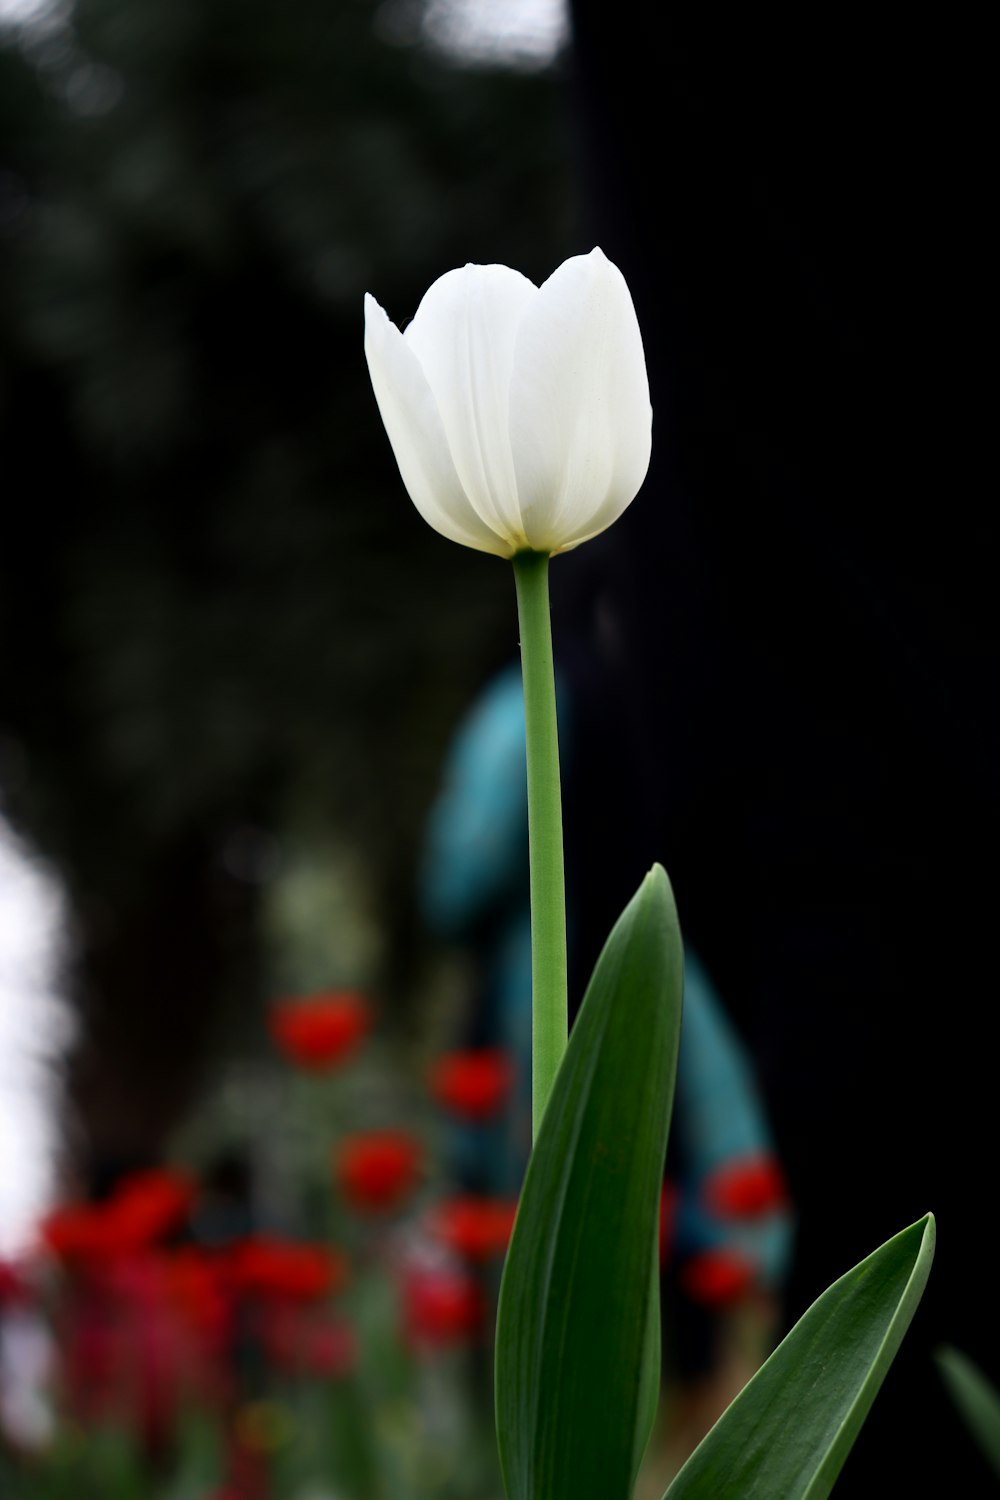 a single white tulip in a garden